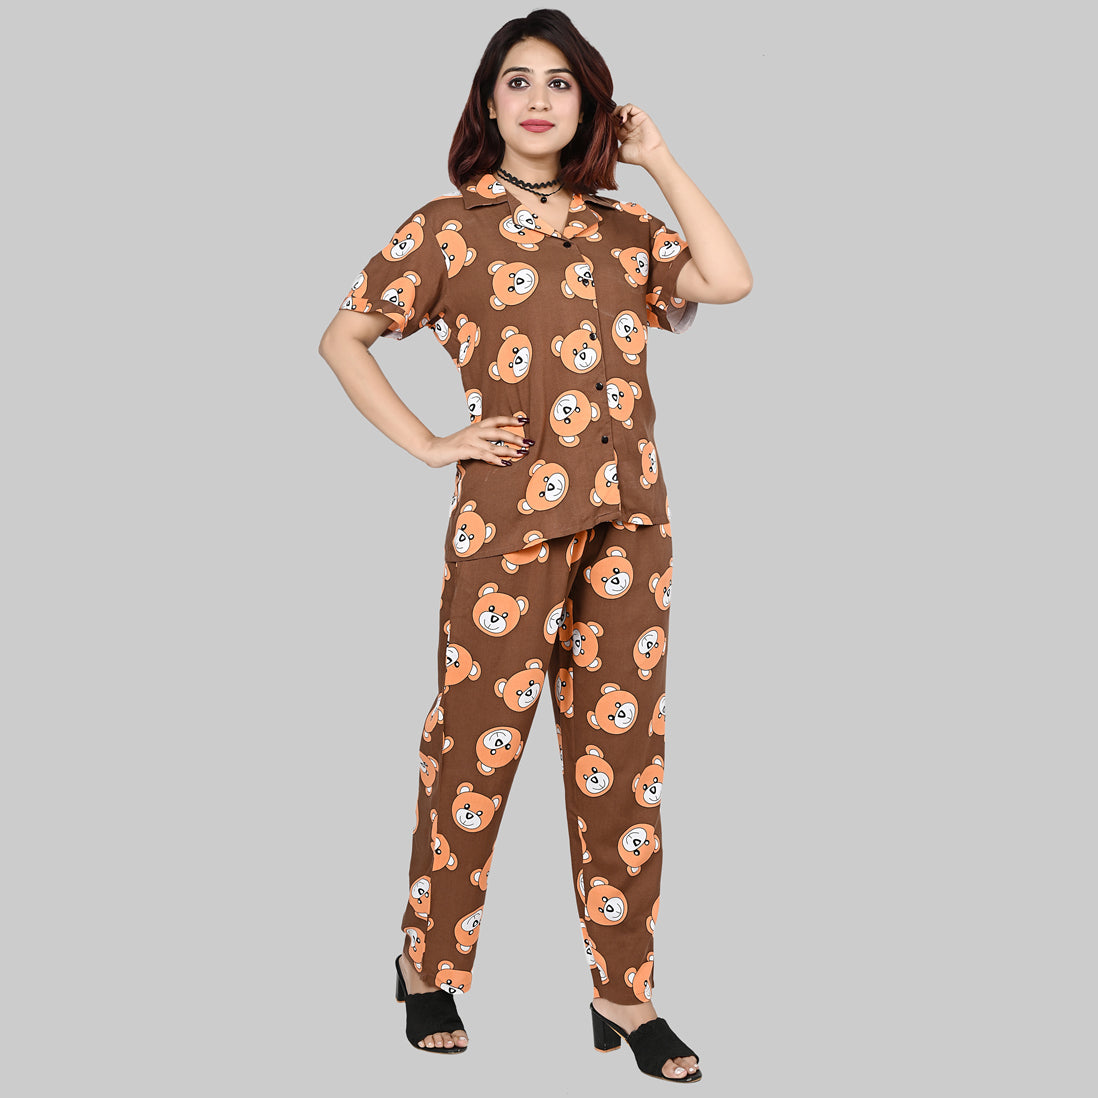 Panda Print Womens Nightwear | Panda Print Pajamas